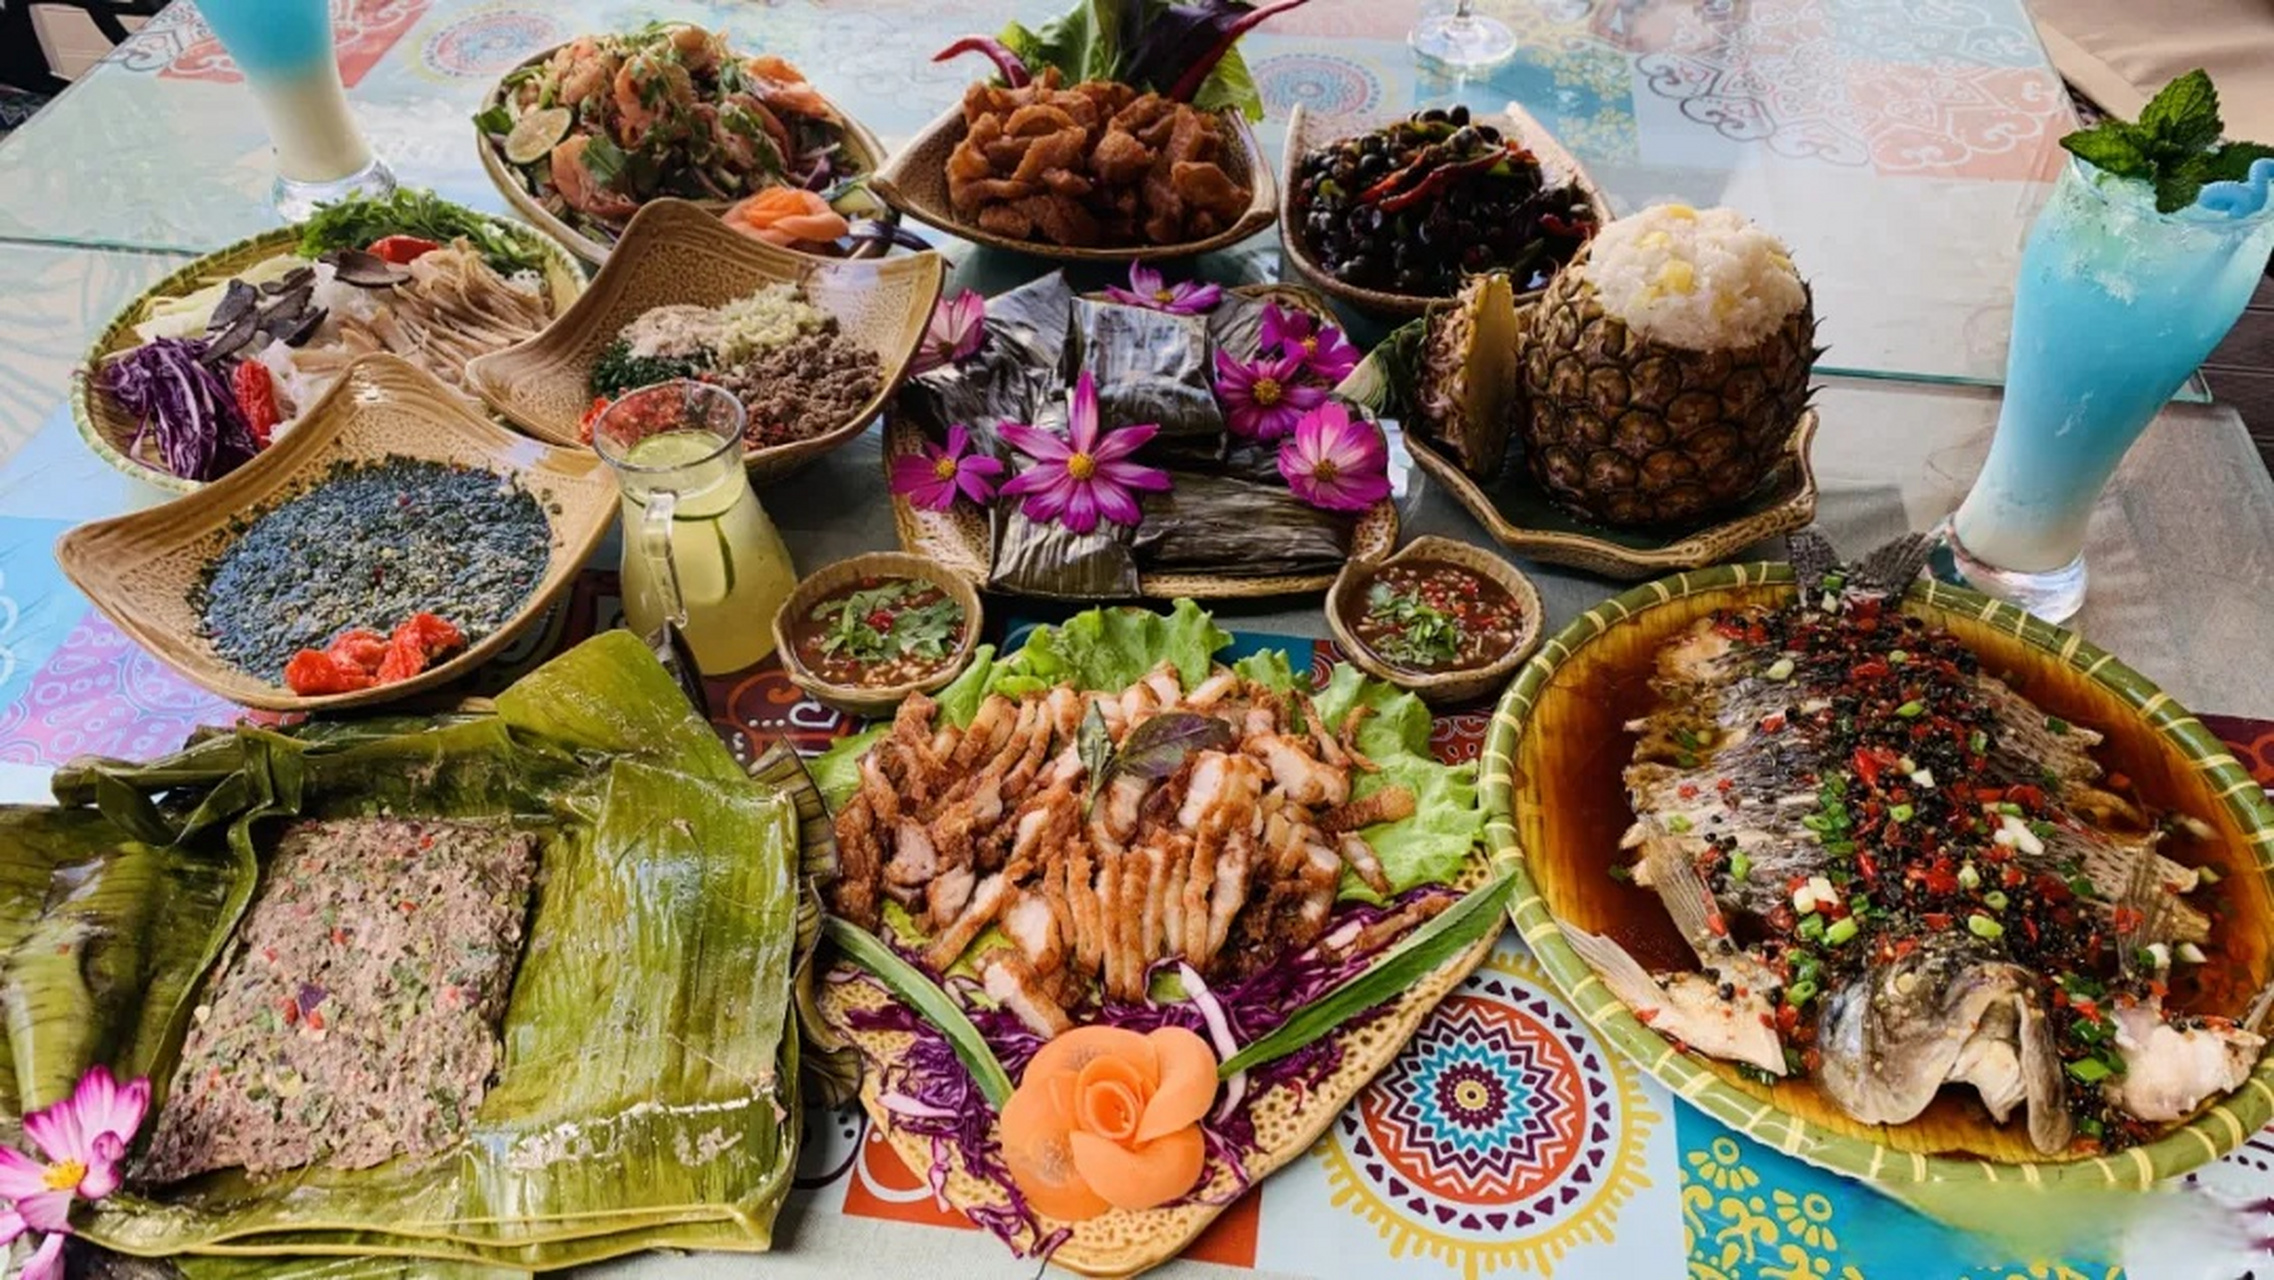 美食说 腾冲傣味极富有民族特色,所谓绿者都是菜,动者皆为肉,傣家人